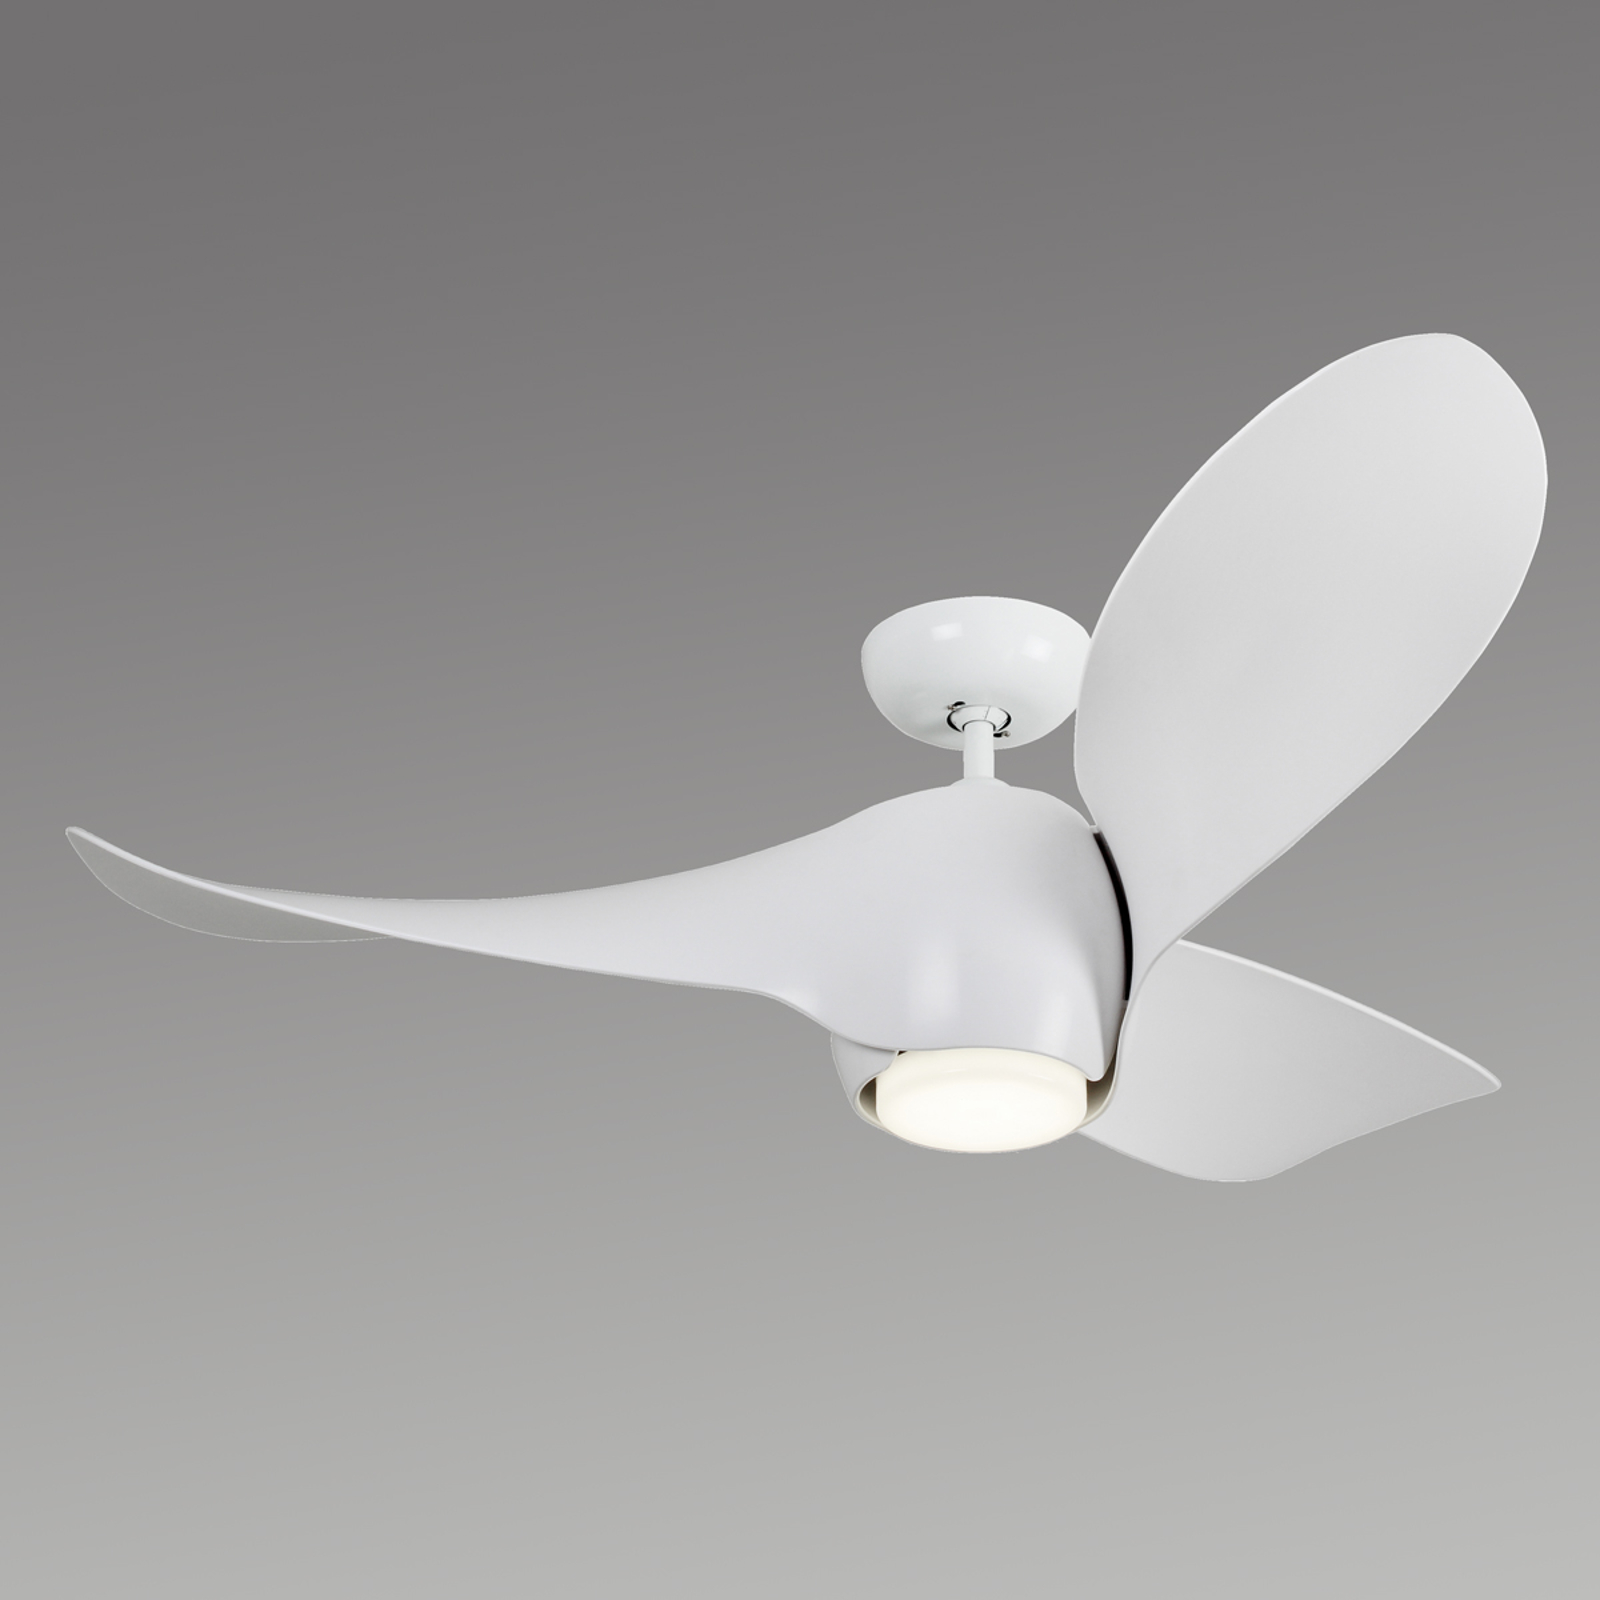 Acquista Moderno ventilatore da soffitto Eco Helix | Lampade.it